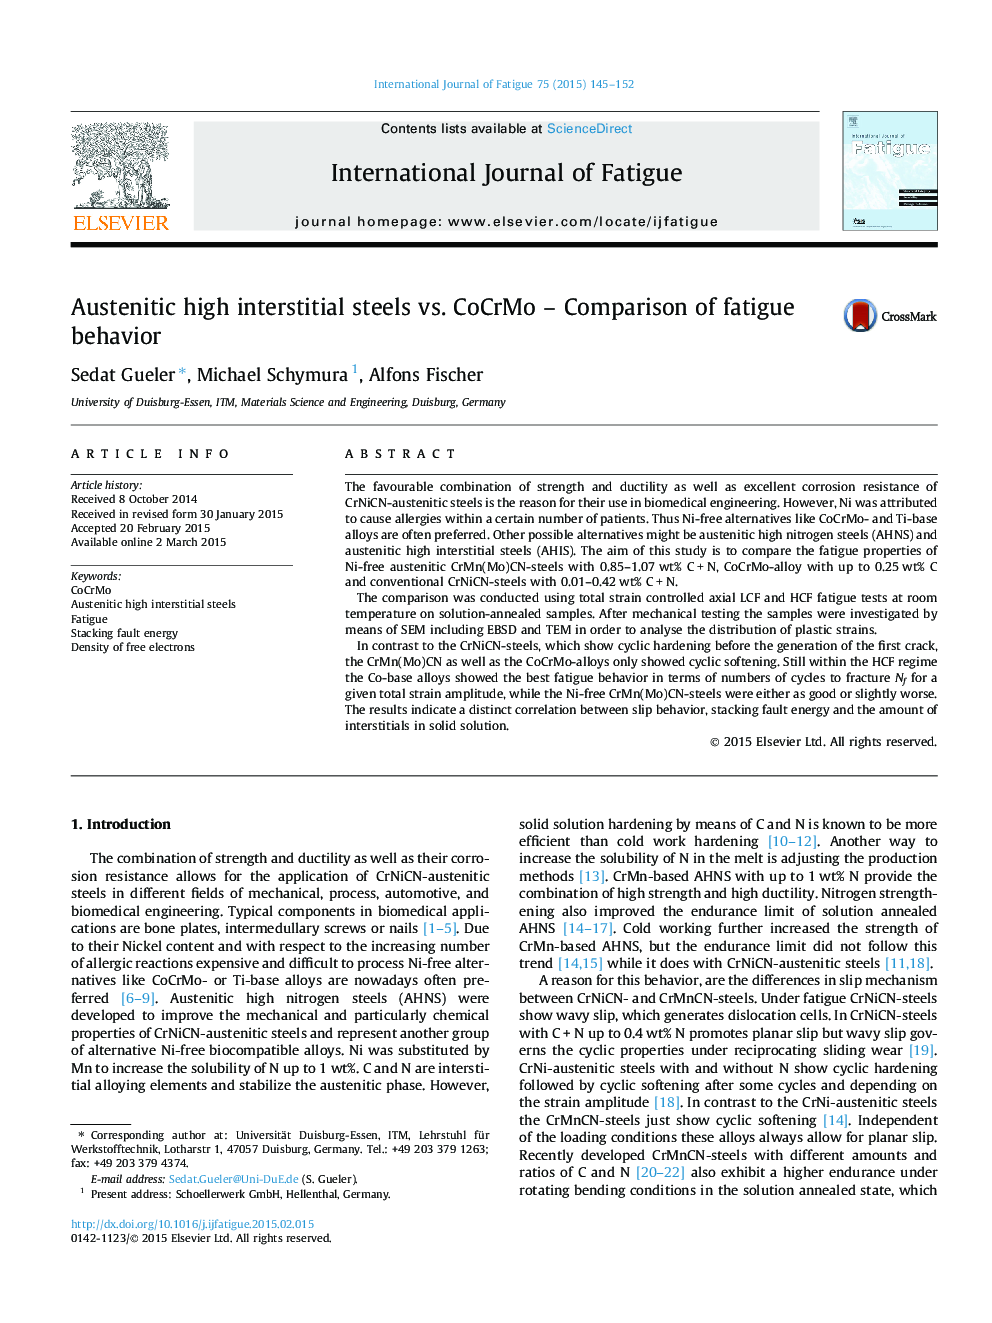 Austenitic high interstitial steels vs. CoCrMo – Comparison of fatigue behavior